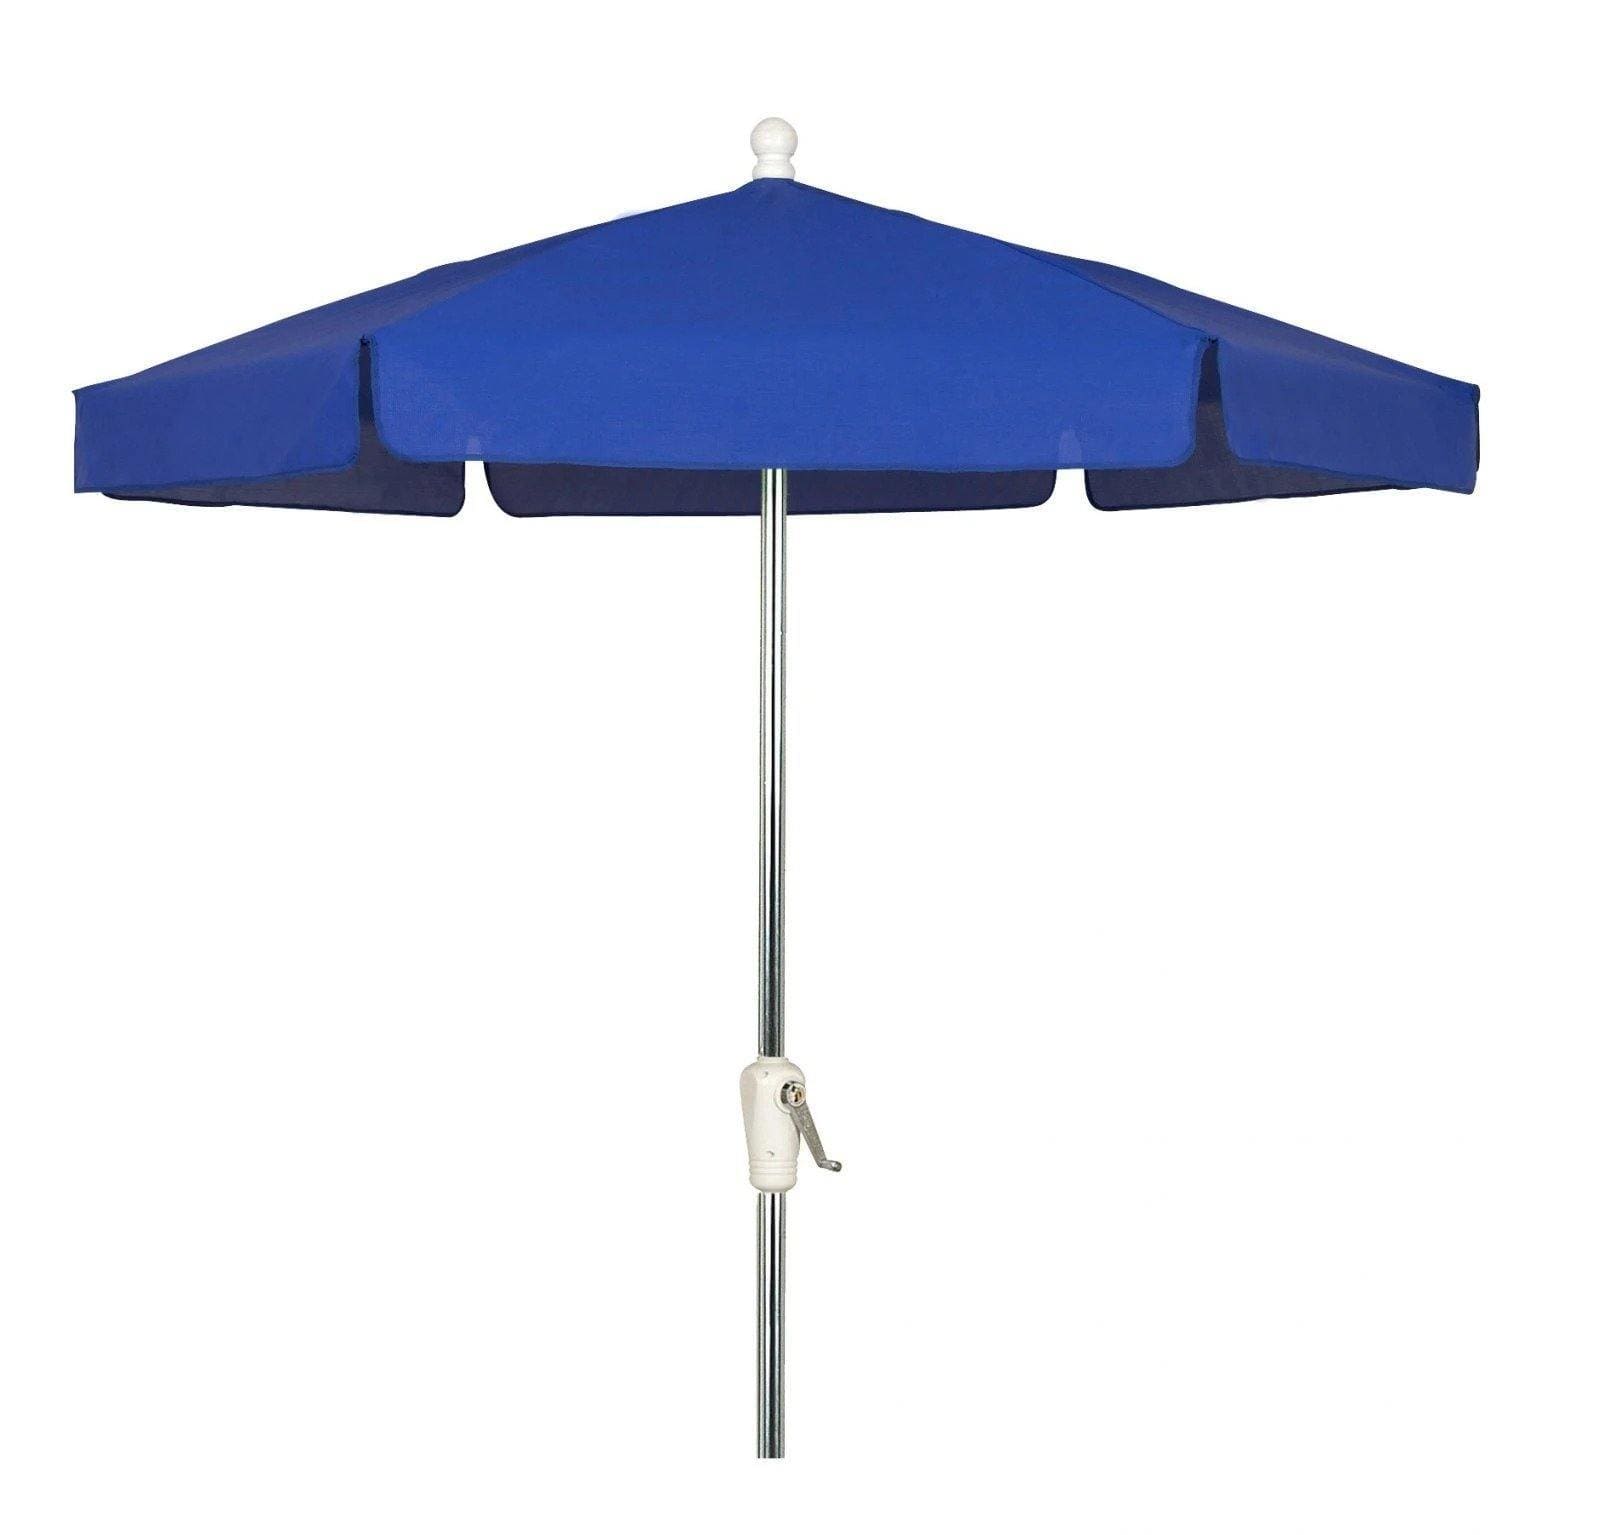 Fiberbuilt Table Umbrellas Pacific Blue Fiberbuilt 7.5' Garden Umbrella w/ Push-Up Lift